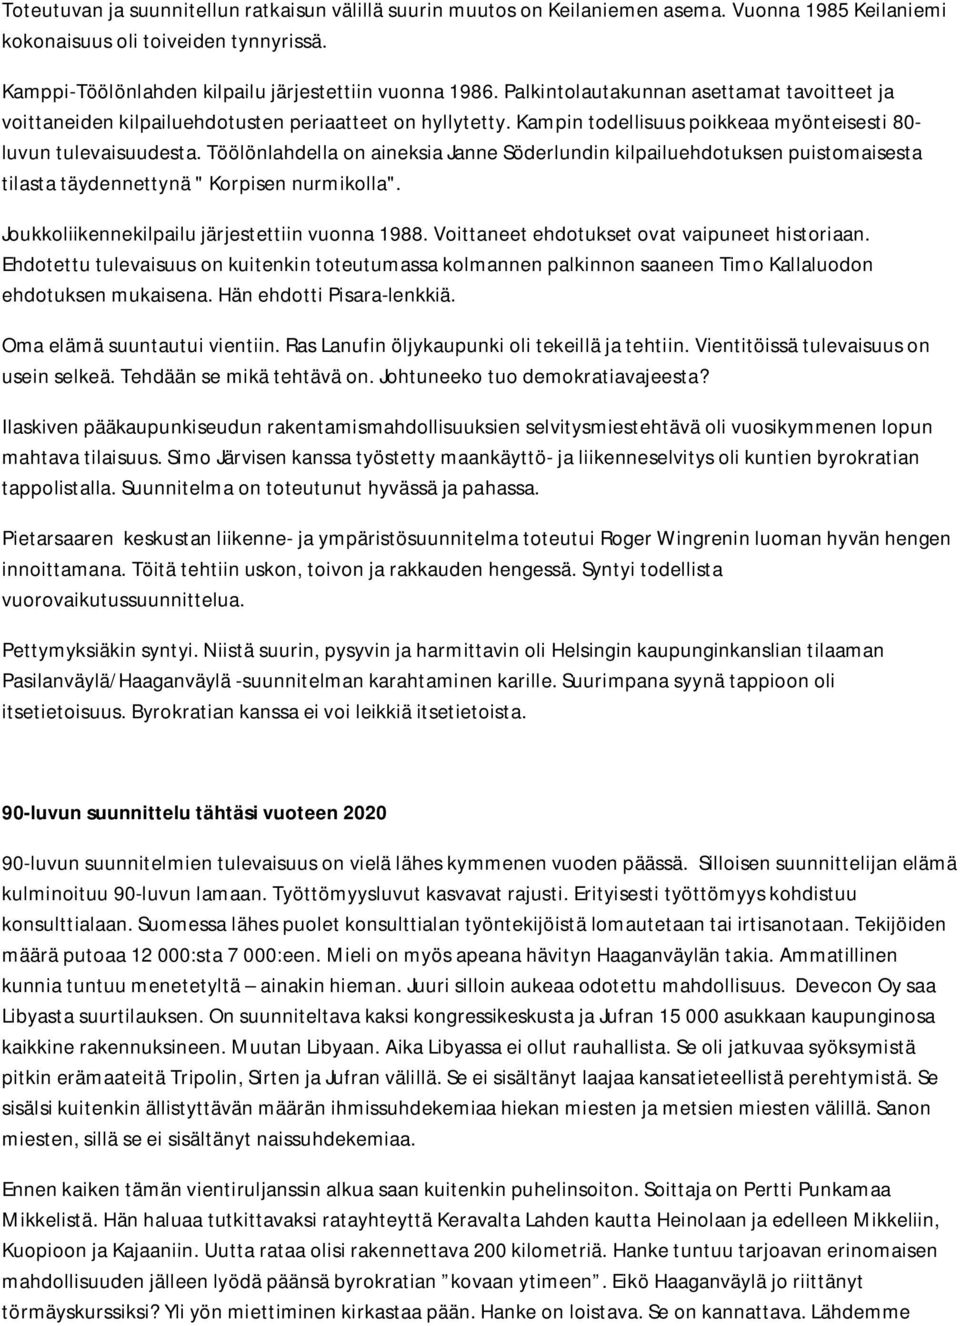 Töölönlahdella on aineksia Janne Söderlundin kilpailuehdotuksen puistomaisesta tilasta täydennettynä " Korpisen nurmikolla". Joukkoliikennekilpailu järjestettiin vuonna 1988.